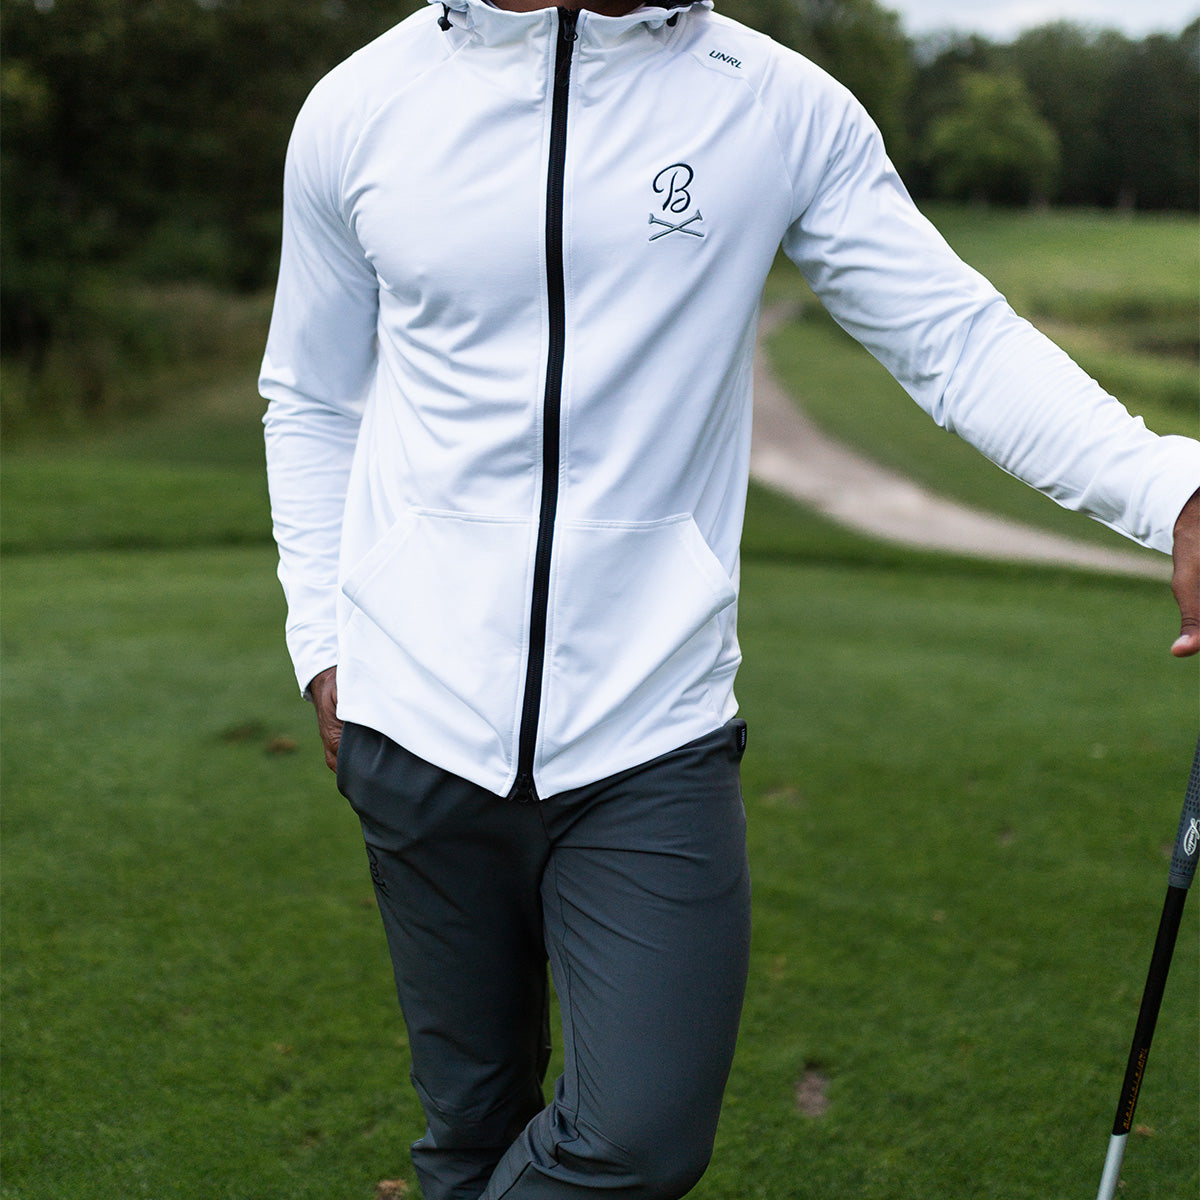 UNRL x Barstool Golf Crossed Tees Cross-Up Hoodie-Hoodies & Sweatshirts-Fore Play-White-S-Barstool Sports